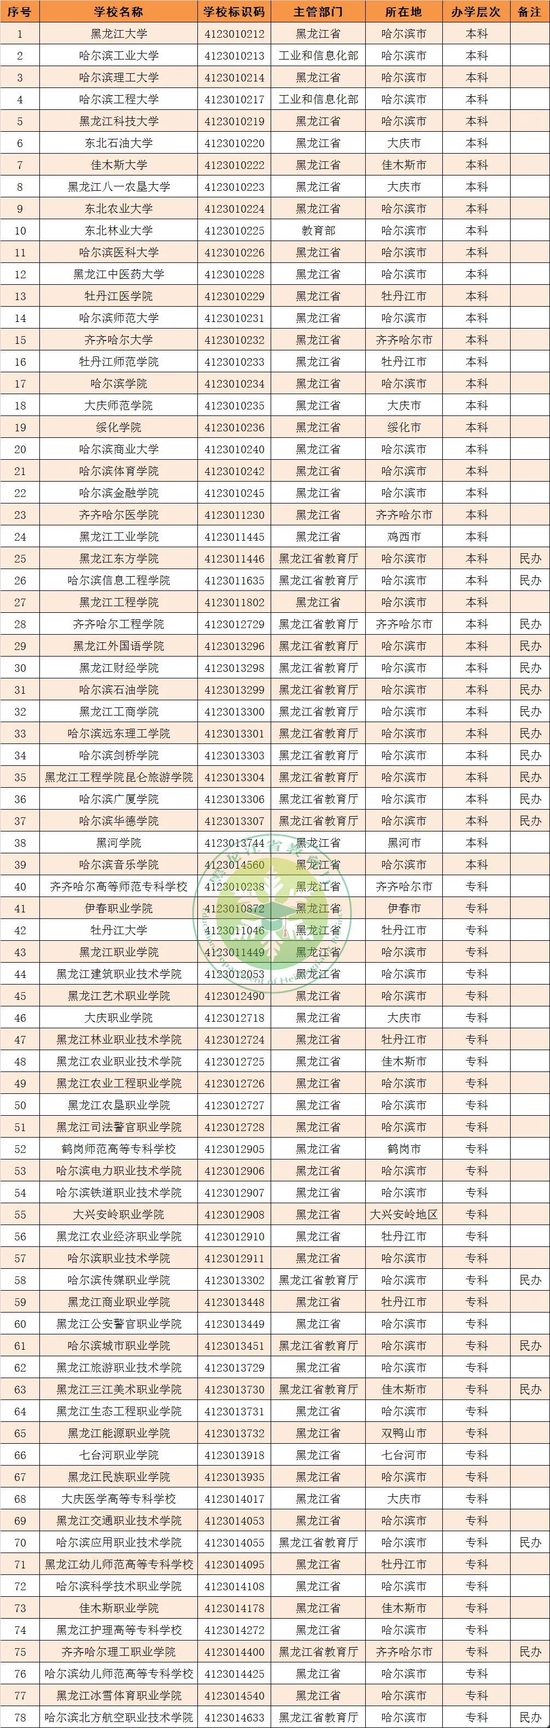 教育部发布全国高校名单 黑龙江省普通高等学校78所